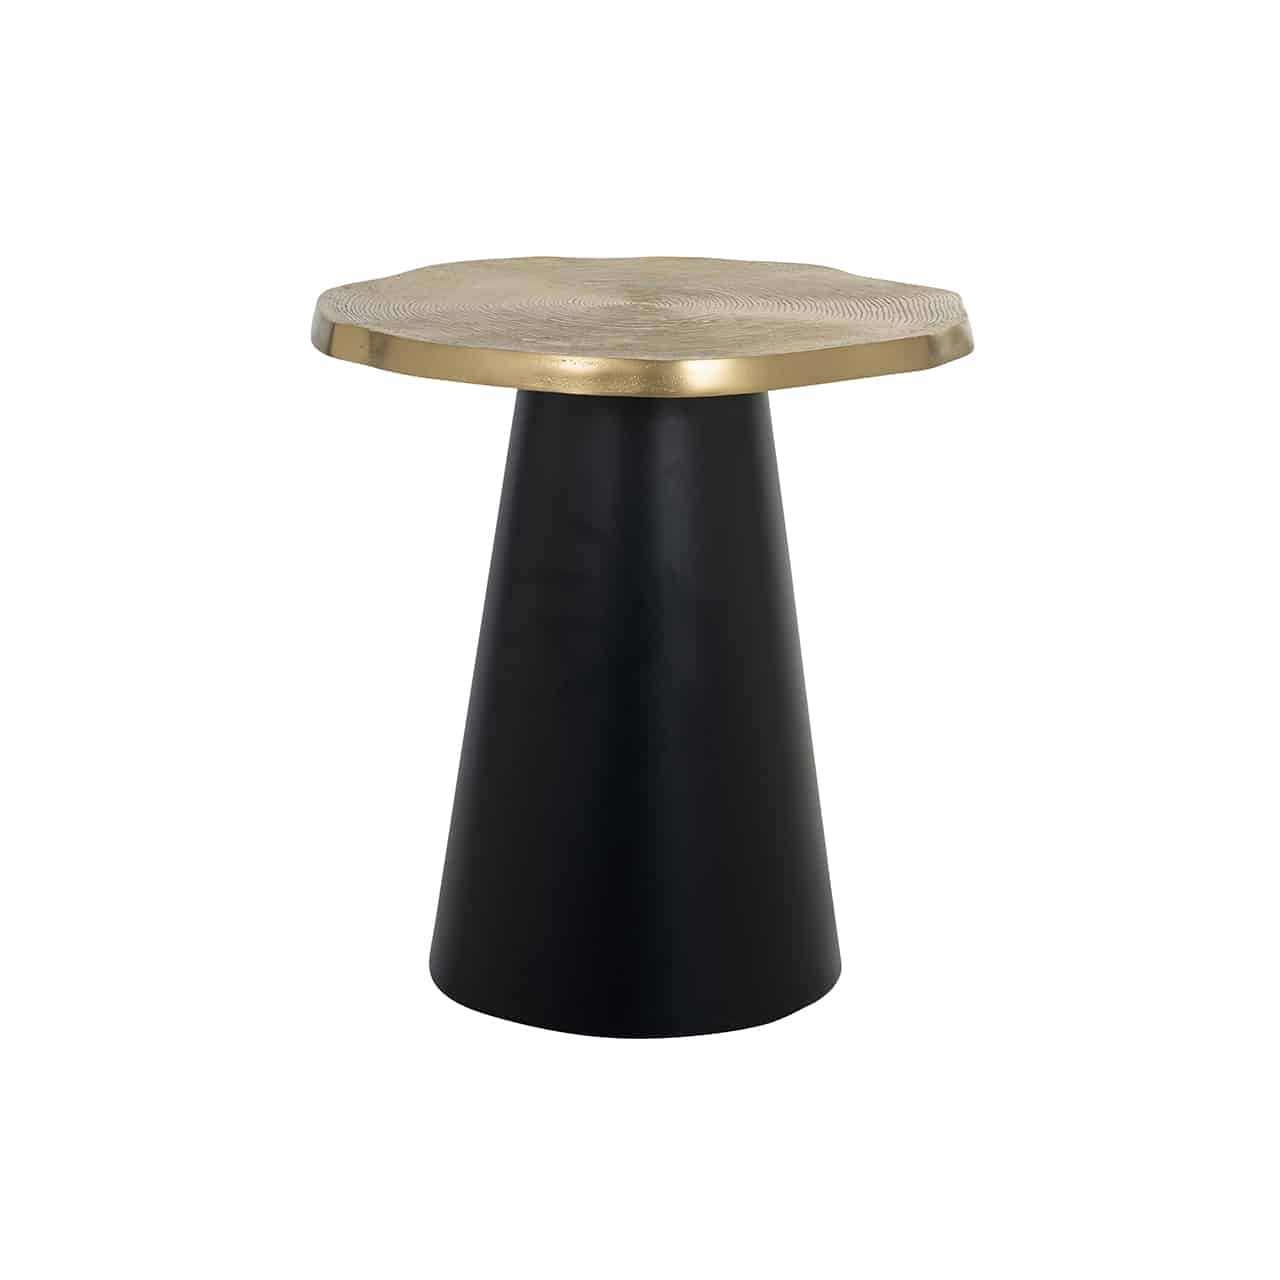 Beistelltisch mit einem hohen, kegelförmigen Fuß in schwarz, daraif eine Tischplatte im Design einer goldenen Baumscheibe.